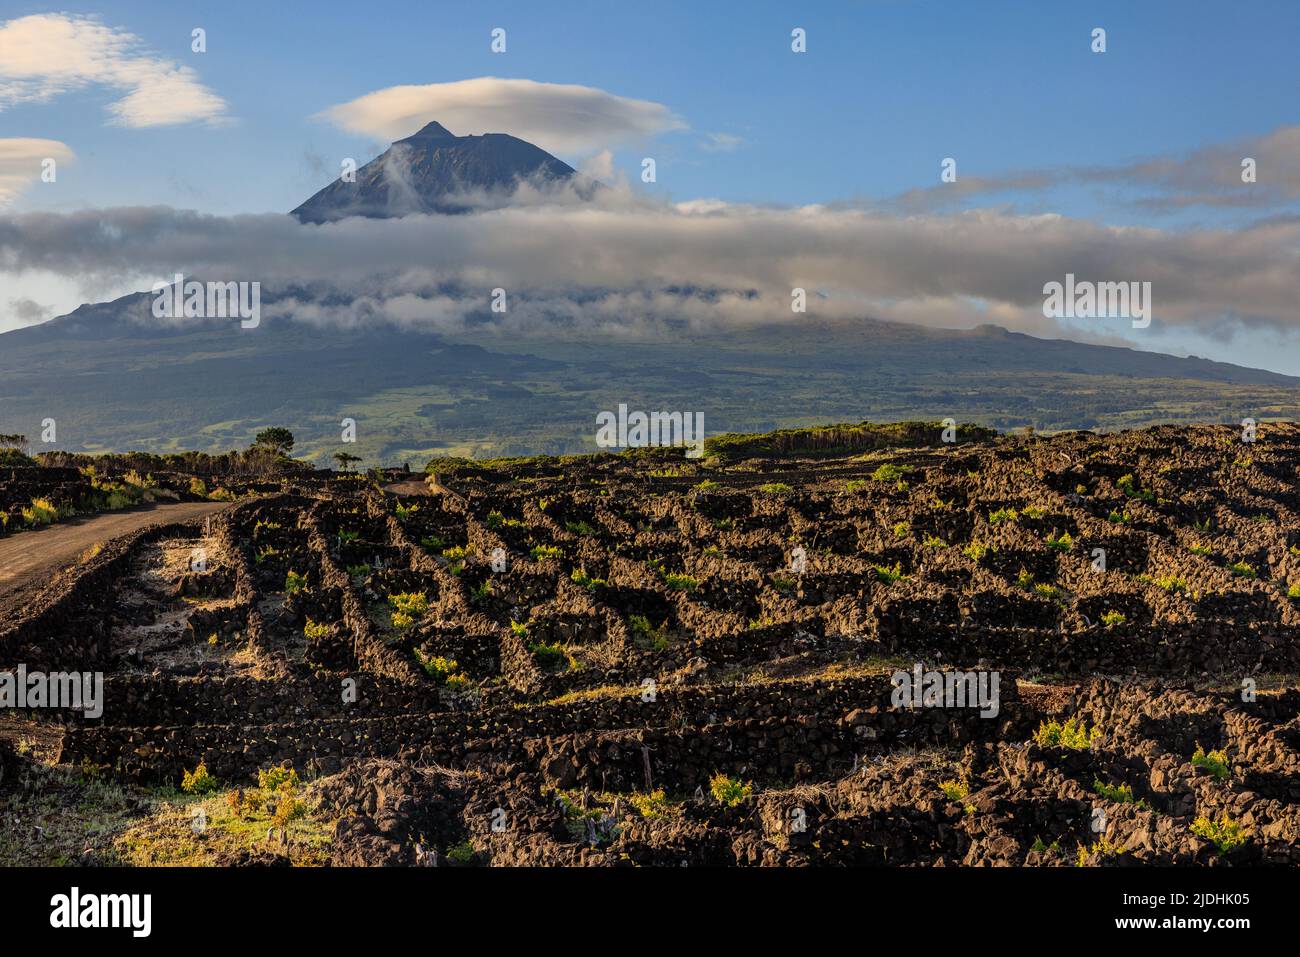 les vignes poussent dans des enceintes de roche volcanique noire sur les pentes inférieures du mont pico avec son sommet dominant un collier de nuages Banque D'Images